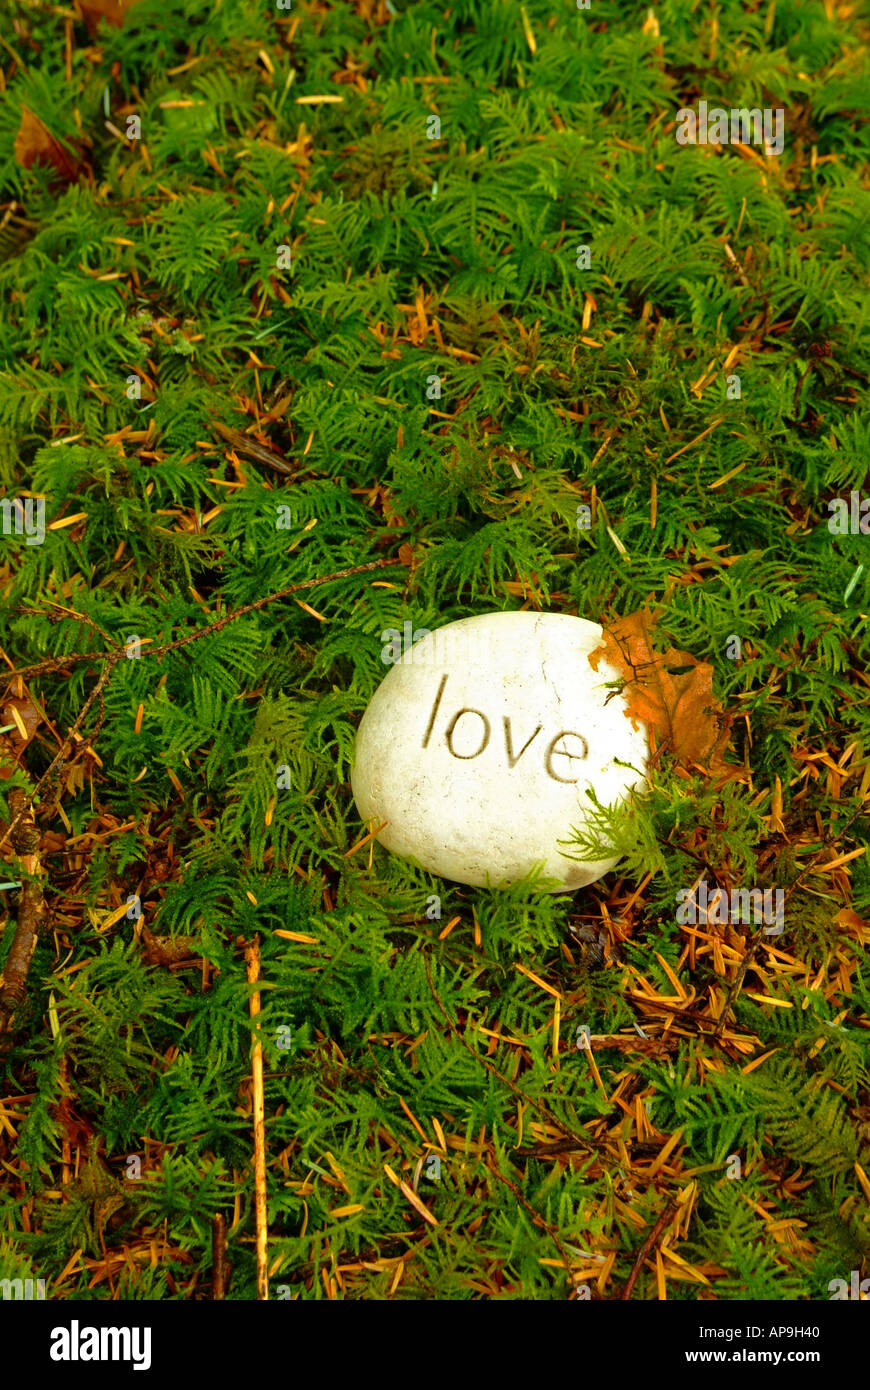 Con la palabra amor en piedra tallada en el musgo en un bosque Foto de stock